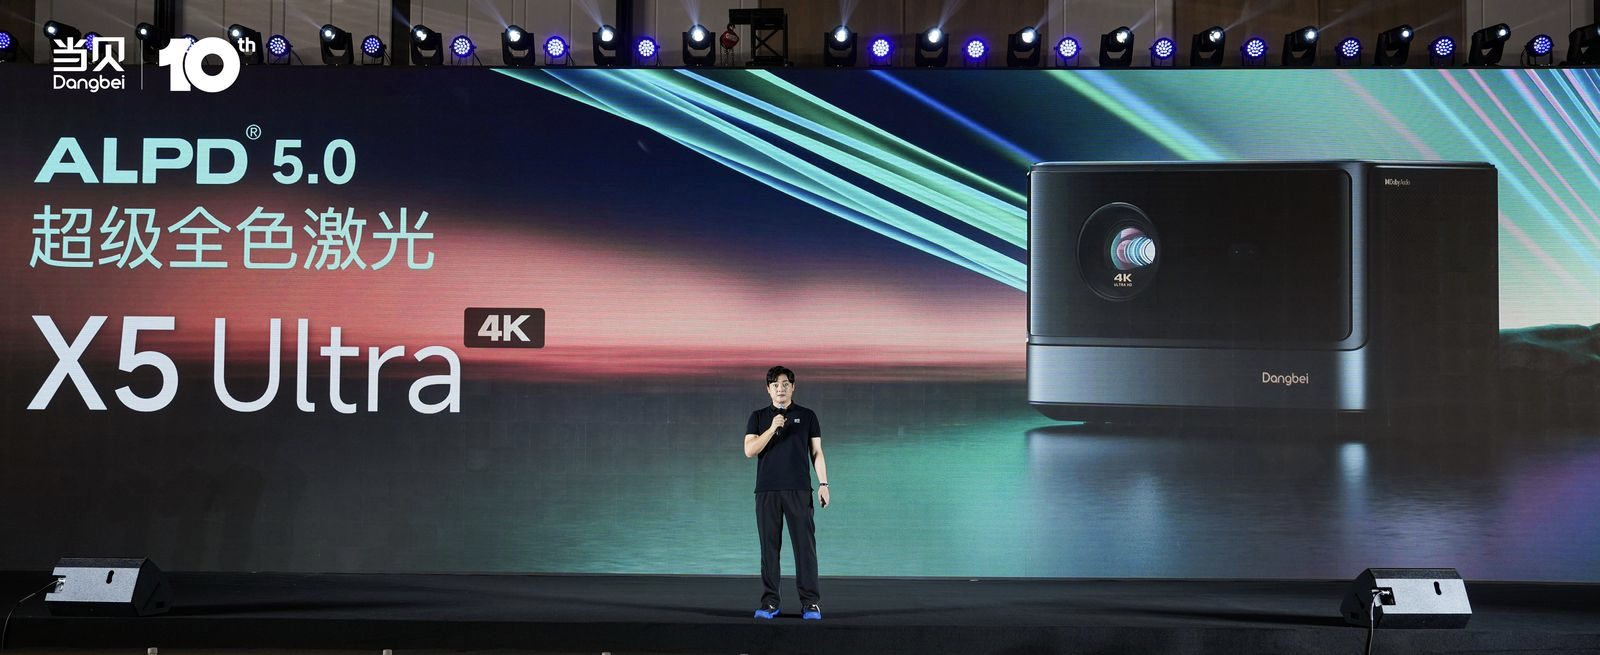 家用智能投影正式迈入4K超级激光时代！当贝X5 Ultra 4K超级激光投影发布-视听圈